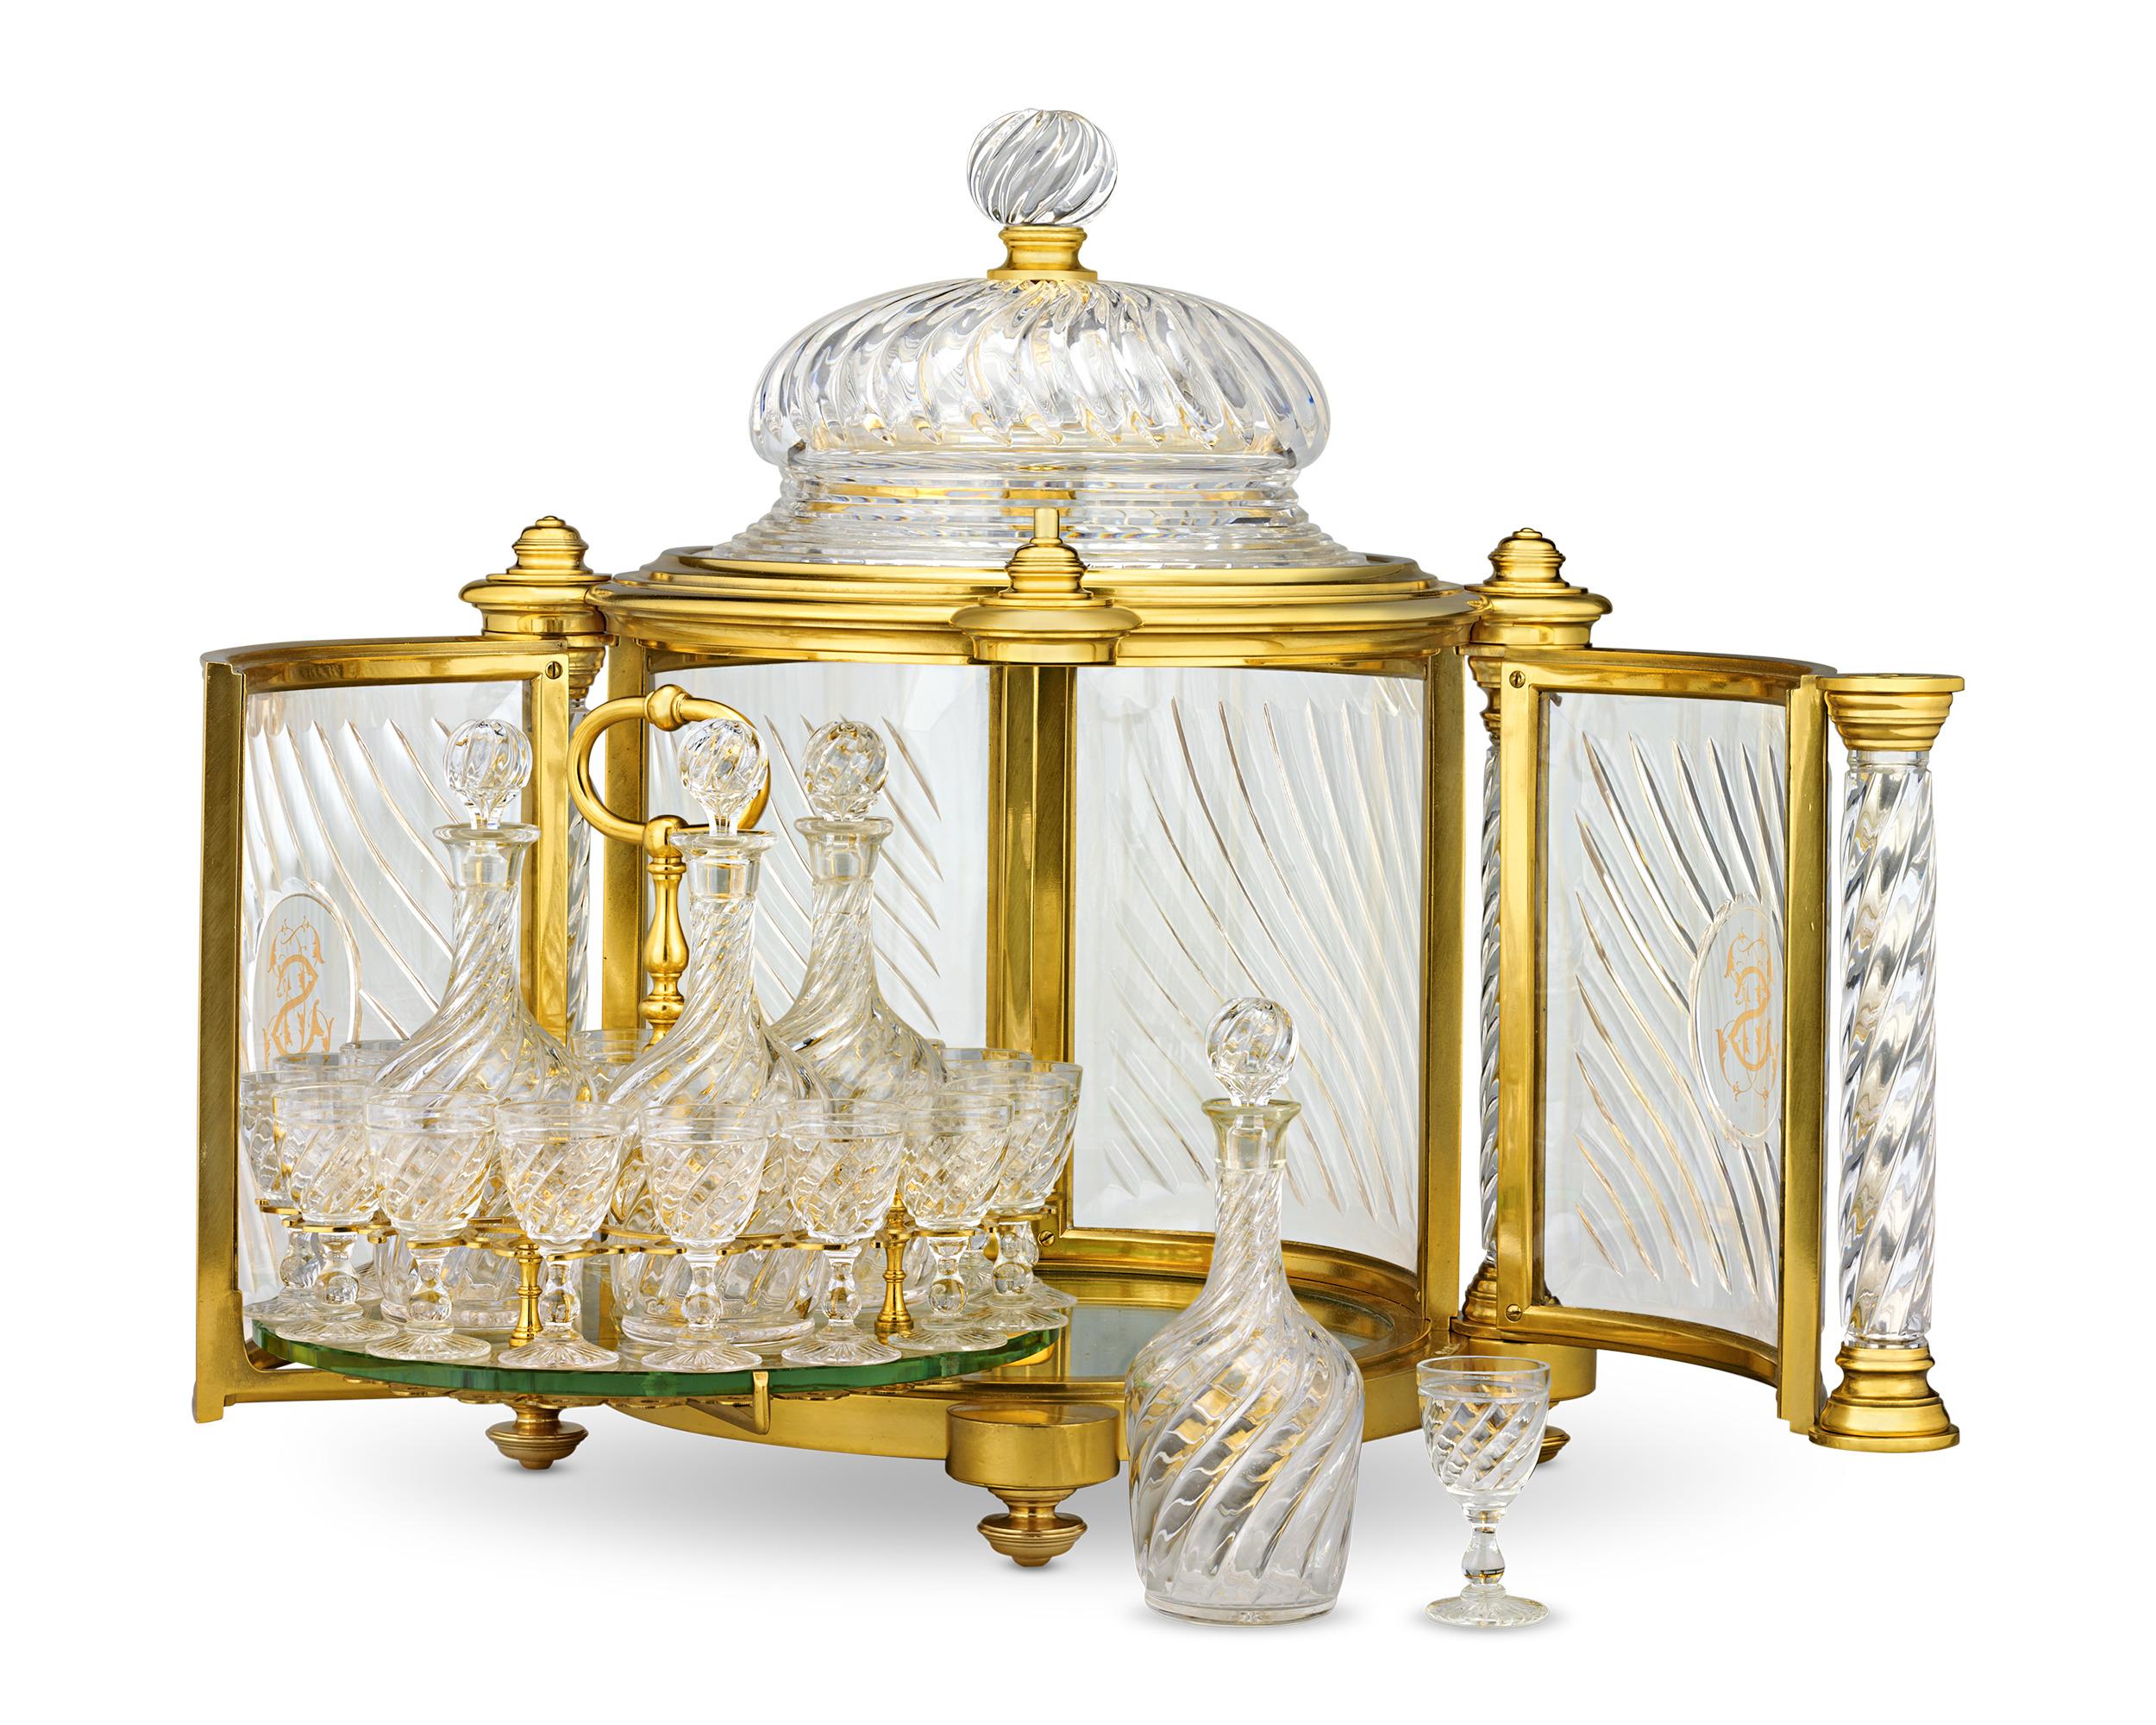 Diese monumentale Likörschatulle aus Ormolu aus dem 19. Jahrhundert ist ein Beispiel für die meisterhafte Handwerkskunst des famosen Luxusunternehmens Baccarat. Die Türen lassen sich öffnen und geben den Blick auf einen verspiegelten Sockel und ein